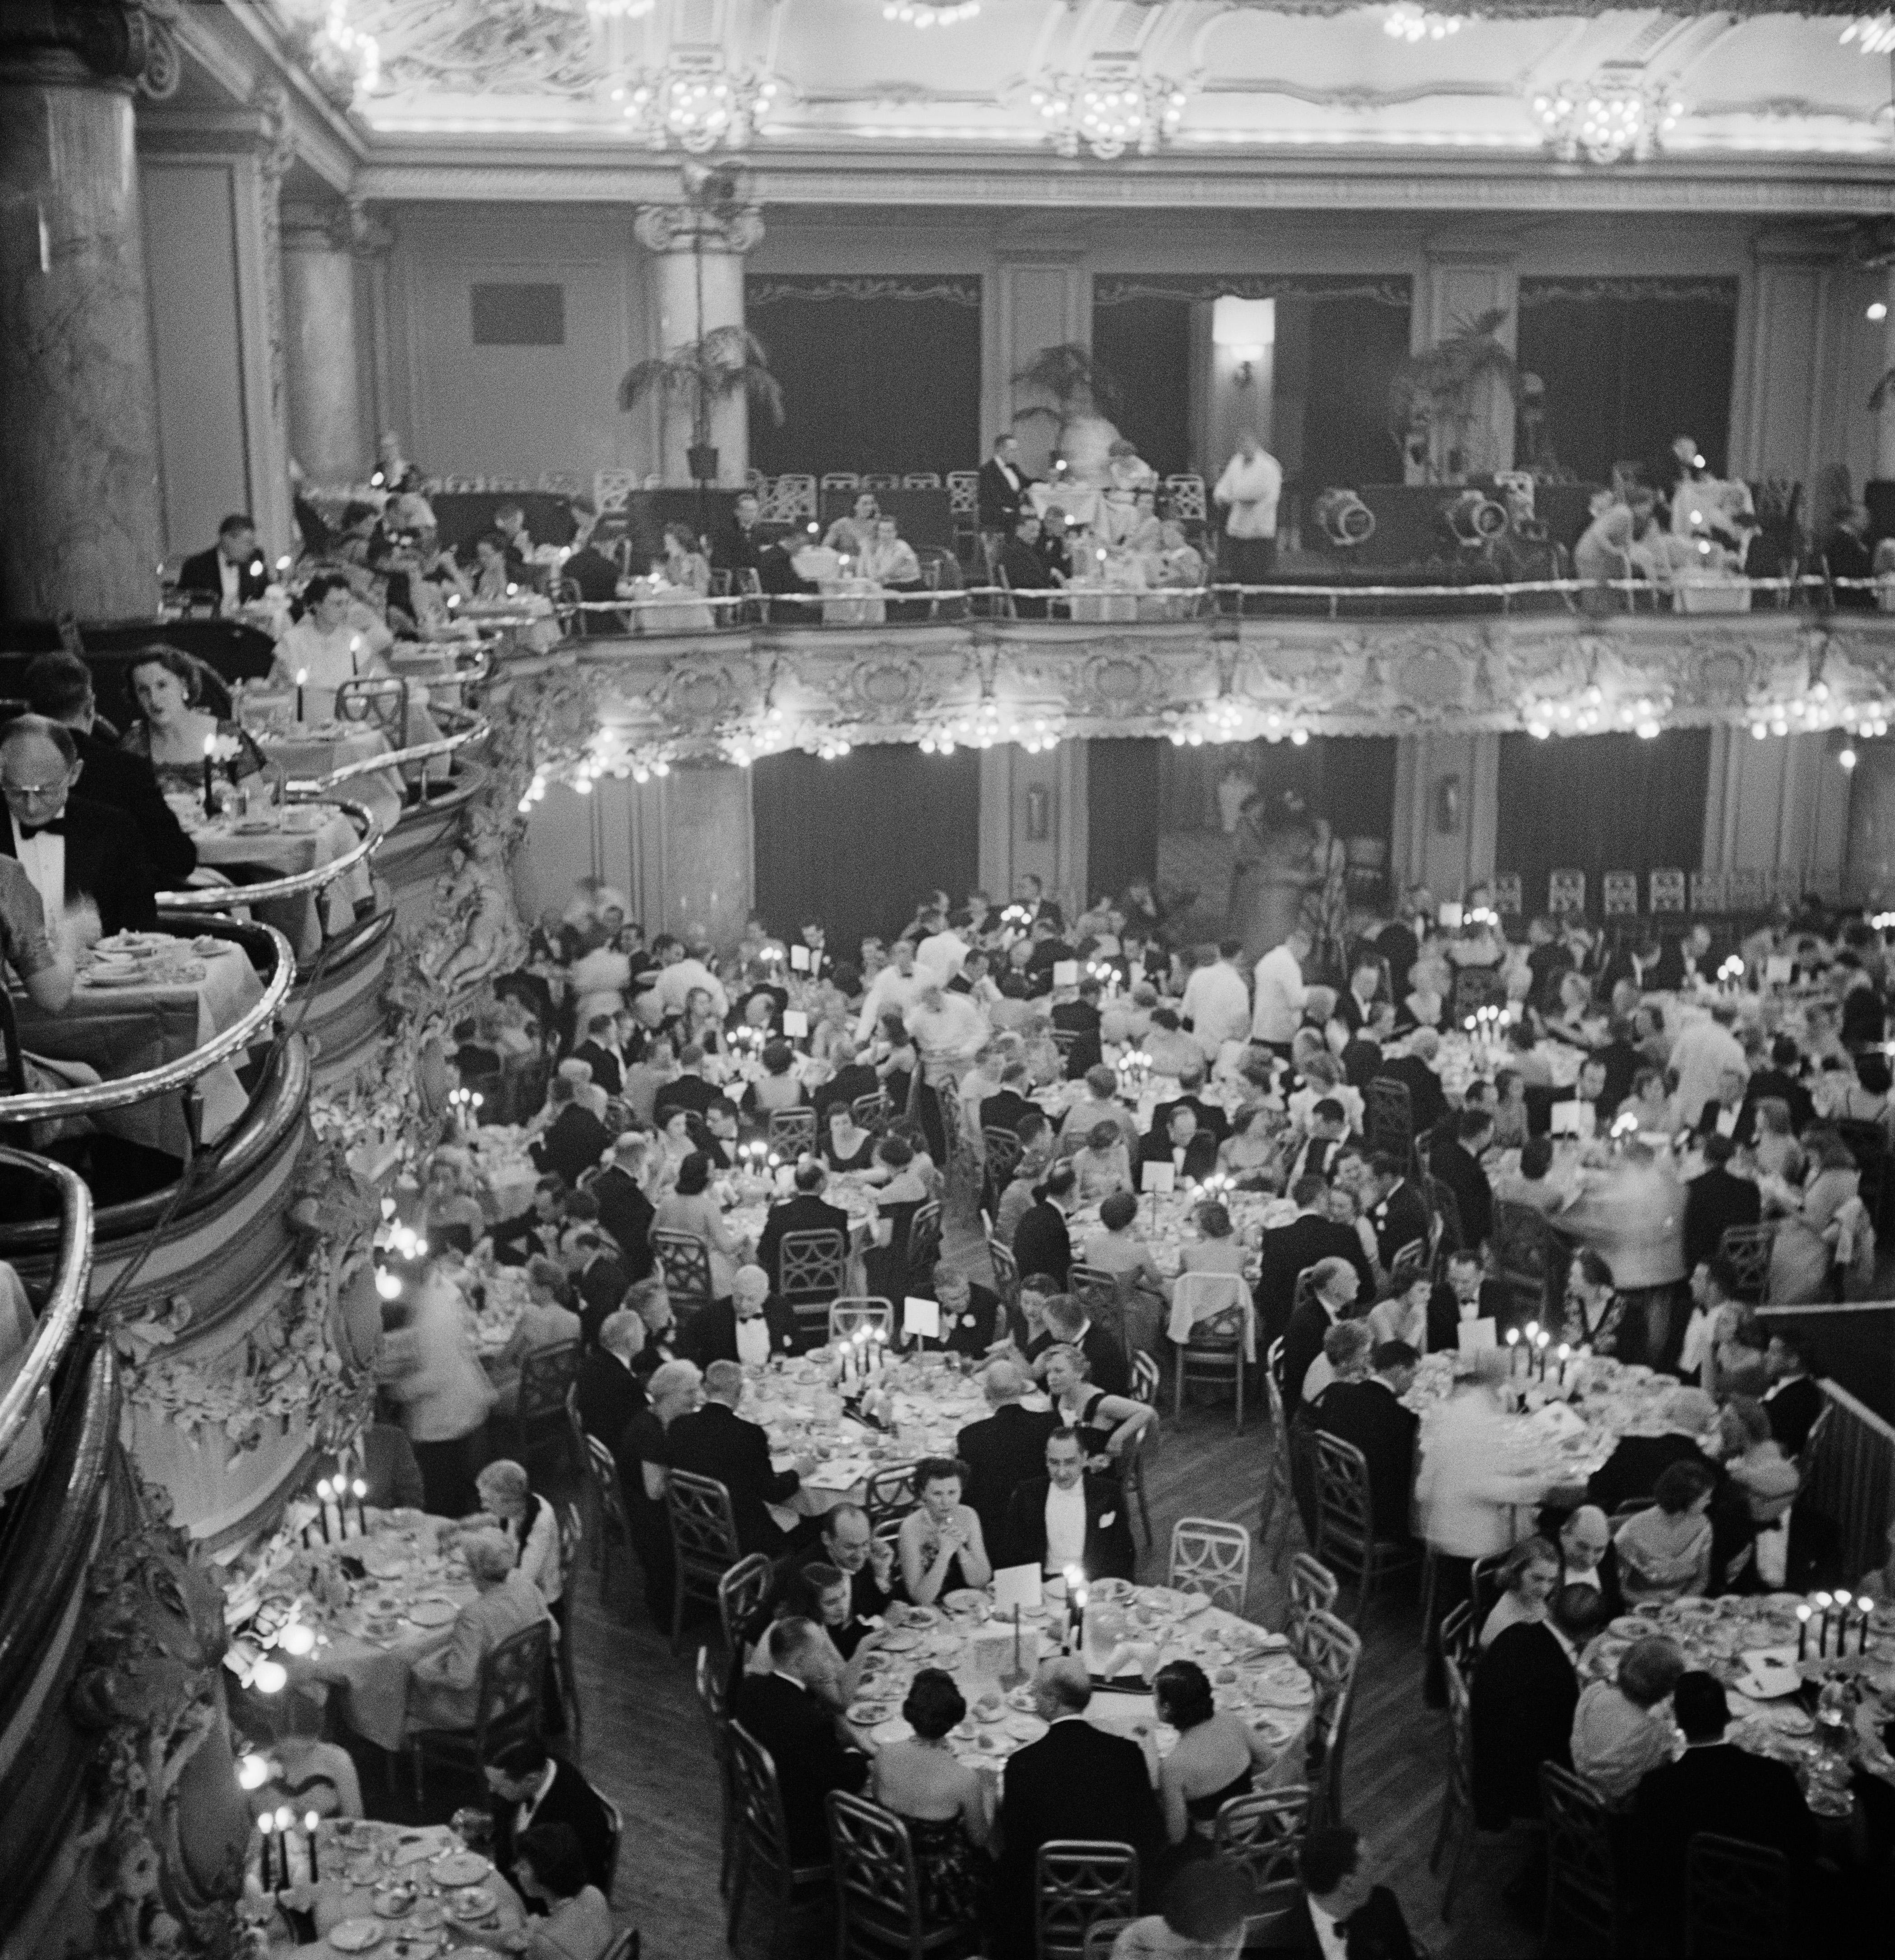 Luxury Dining" 1955 Slim Aarons Limited Estate Edition
Gäste in einem großen Ballsaal während einer Modenschau, um 1955. 

Schlanker Aarons-Silbergelatine-Druck auf Faserbasis 
Später gedruckt 
Slim Aarons Estate Edition 
Hergestellt unter